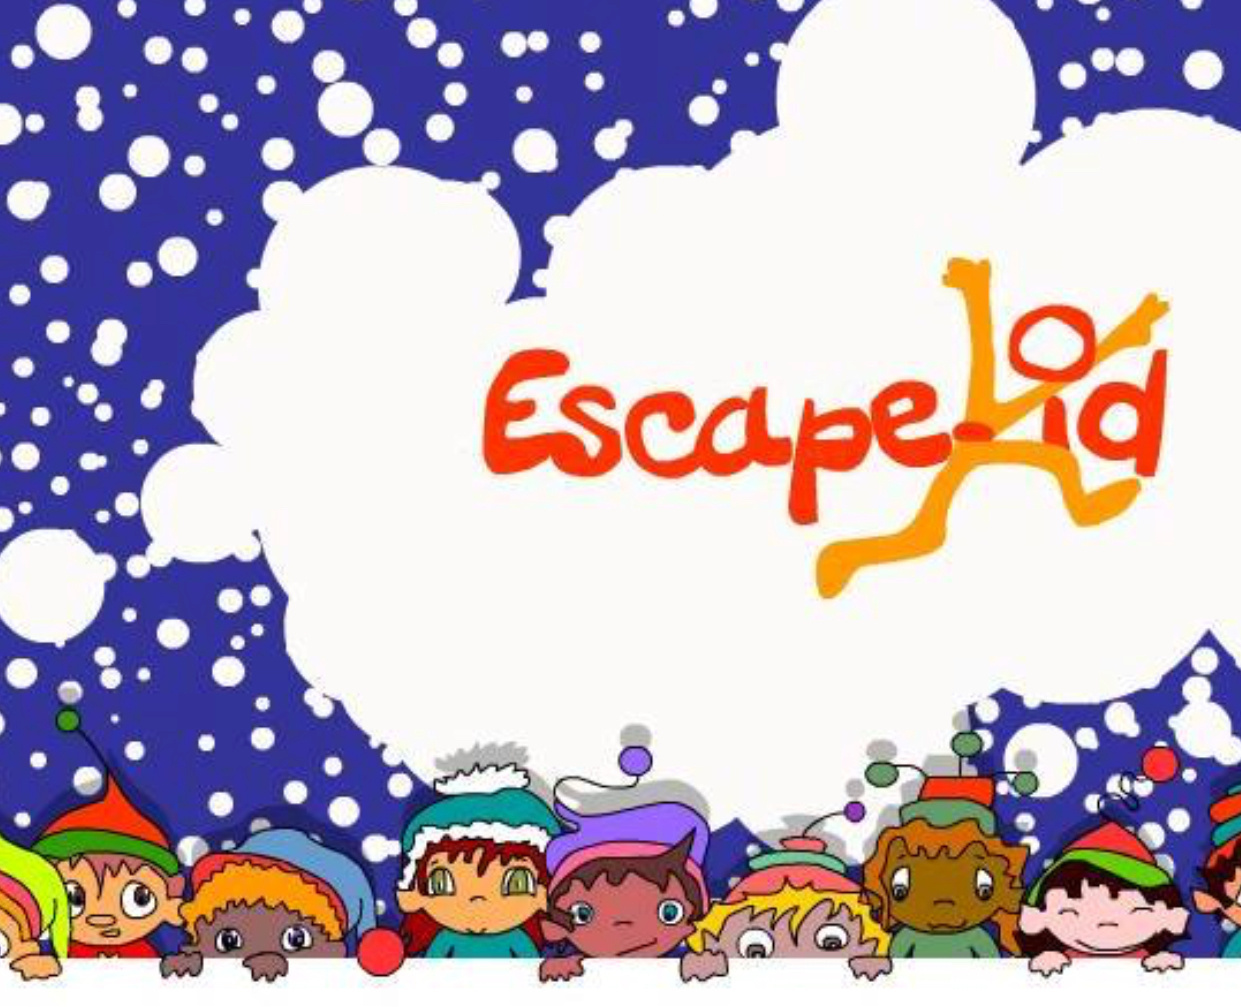 Caen You Escape Kids - Le premier Escape Game pour enfants à Caen